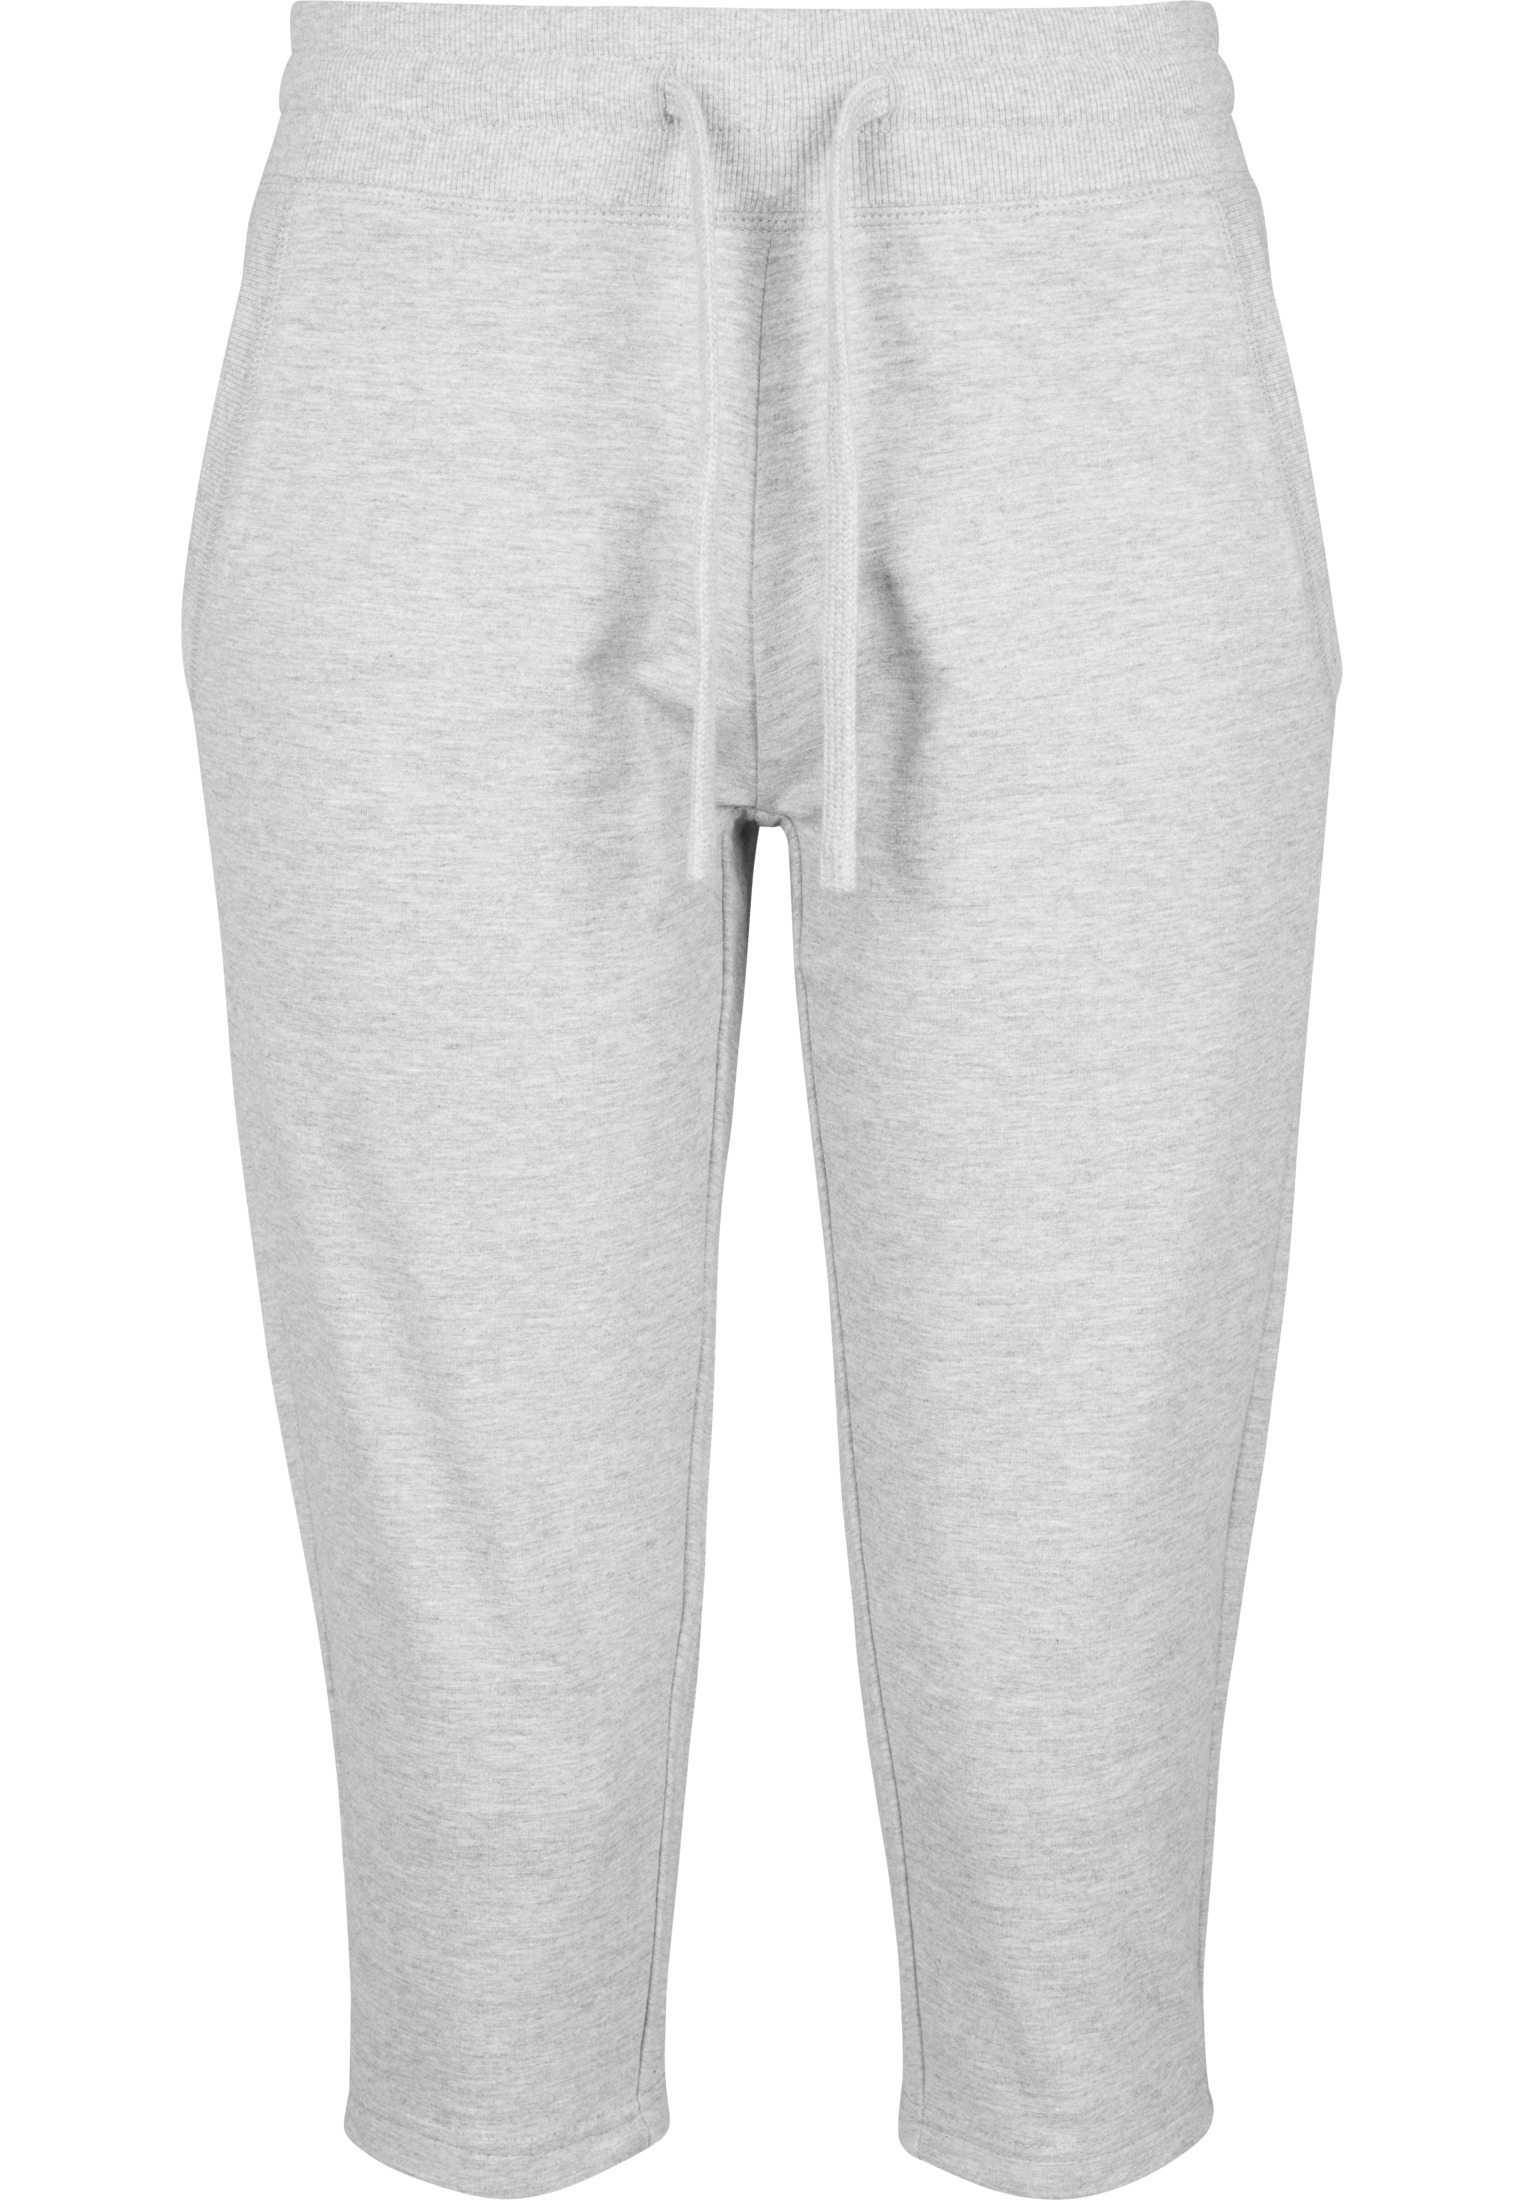 Ladies Capri Sweatpants Build Your Brand Women's Terry 3/4 Jogging Pants BY067